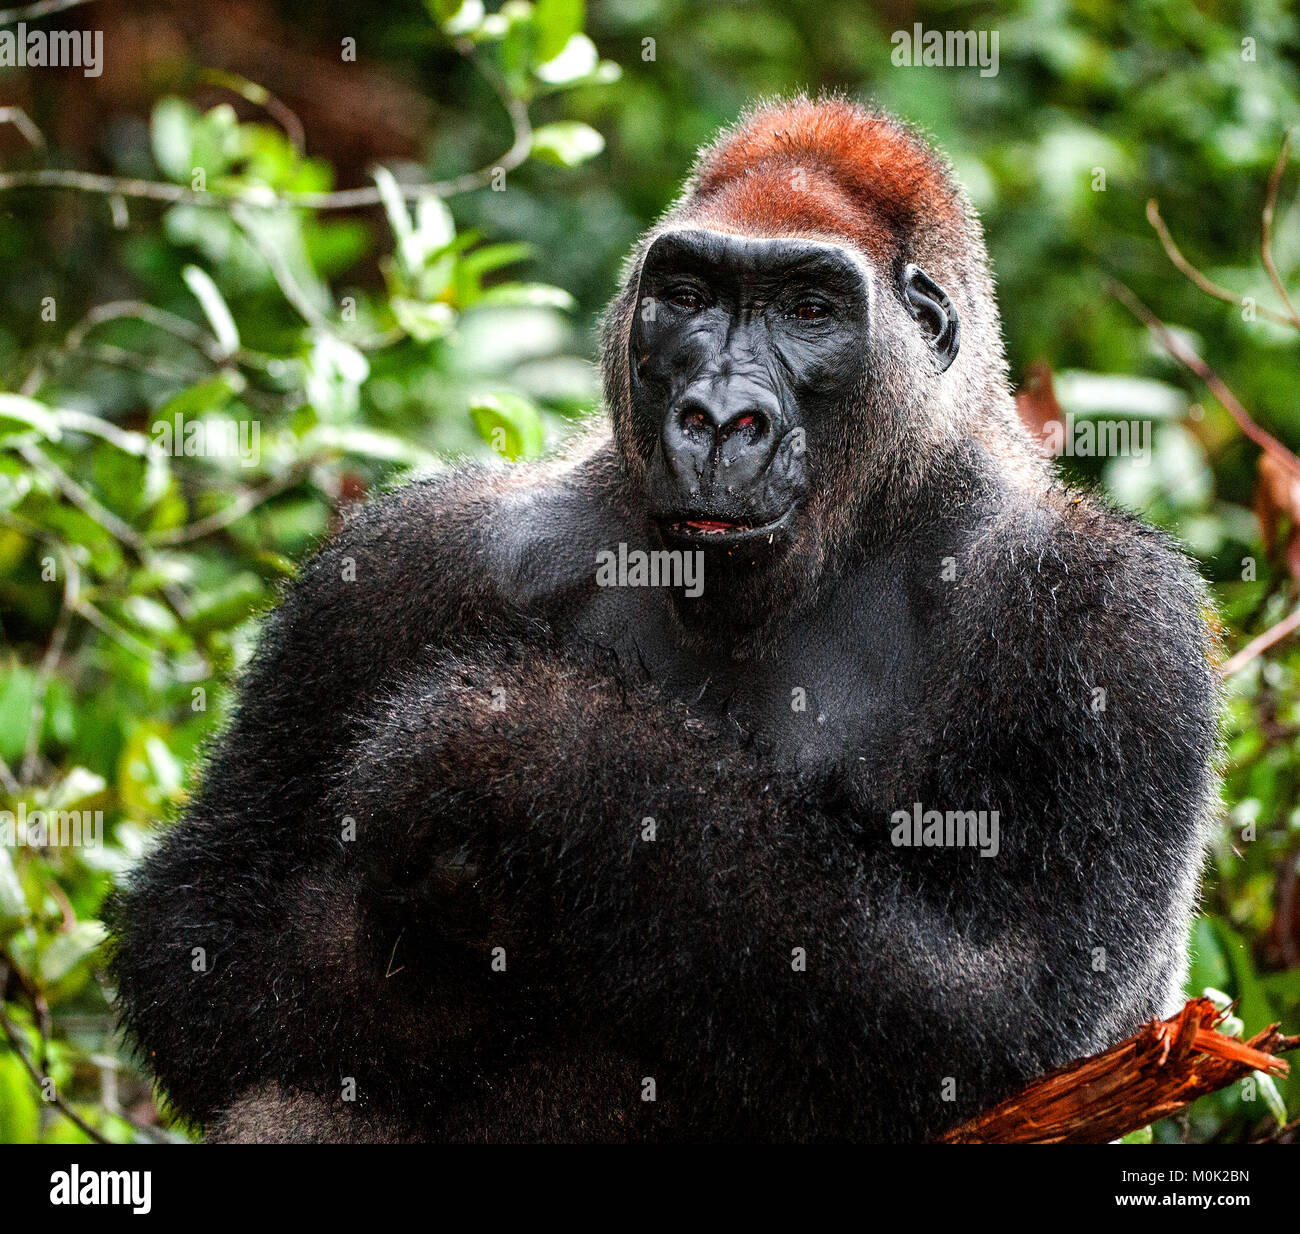 Porträt eines westlichen Flachlandgorilla (Gorilla gorilla Gorilla) Schließen in kurzer Entfernung. Silverback - erwachsenen männlichen von einem Gorilla in einem natürlichen Lebensraum Stockfoto